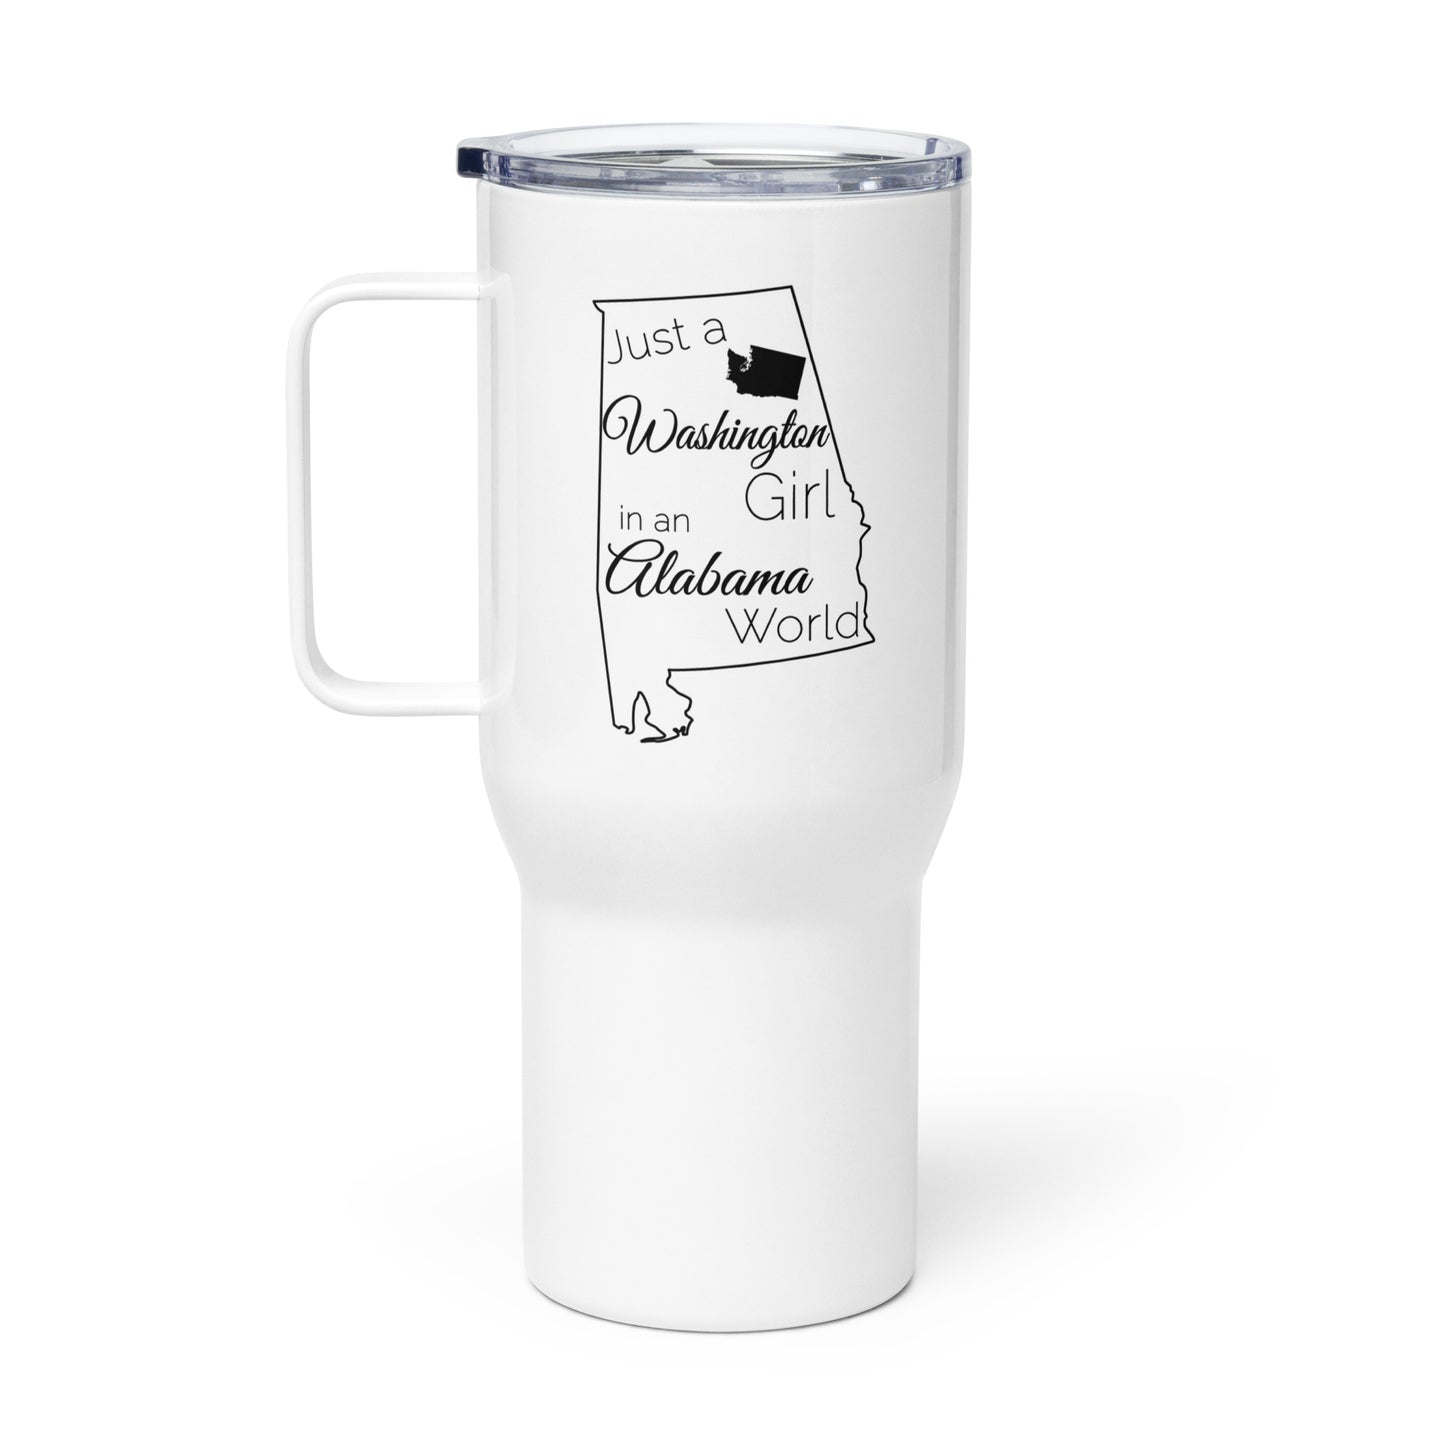 Just a Washington Girl in an Alabama World Travel mug with a handle